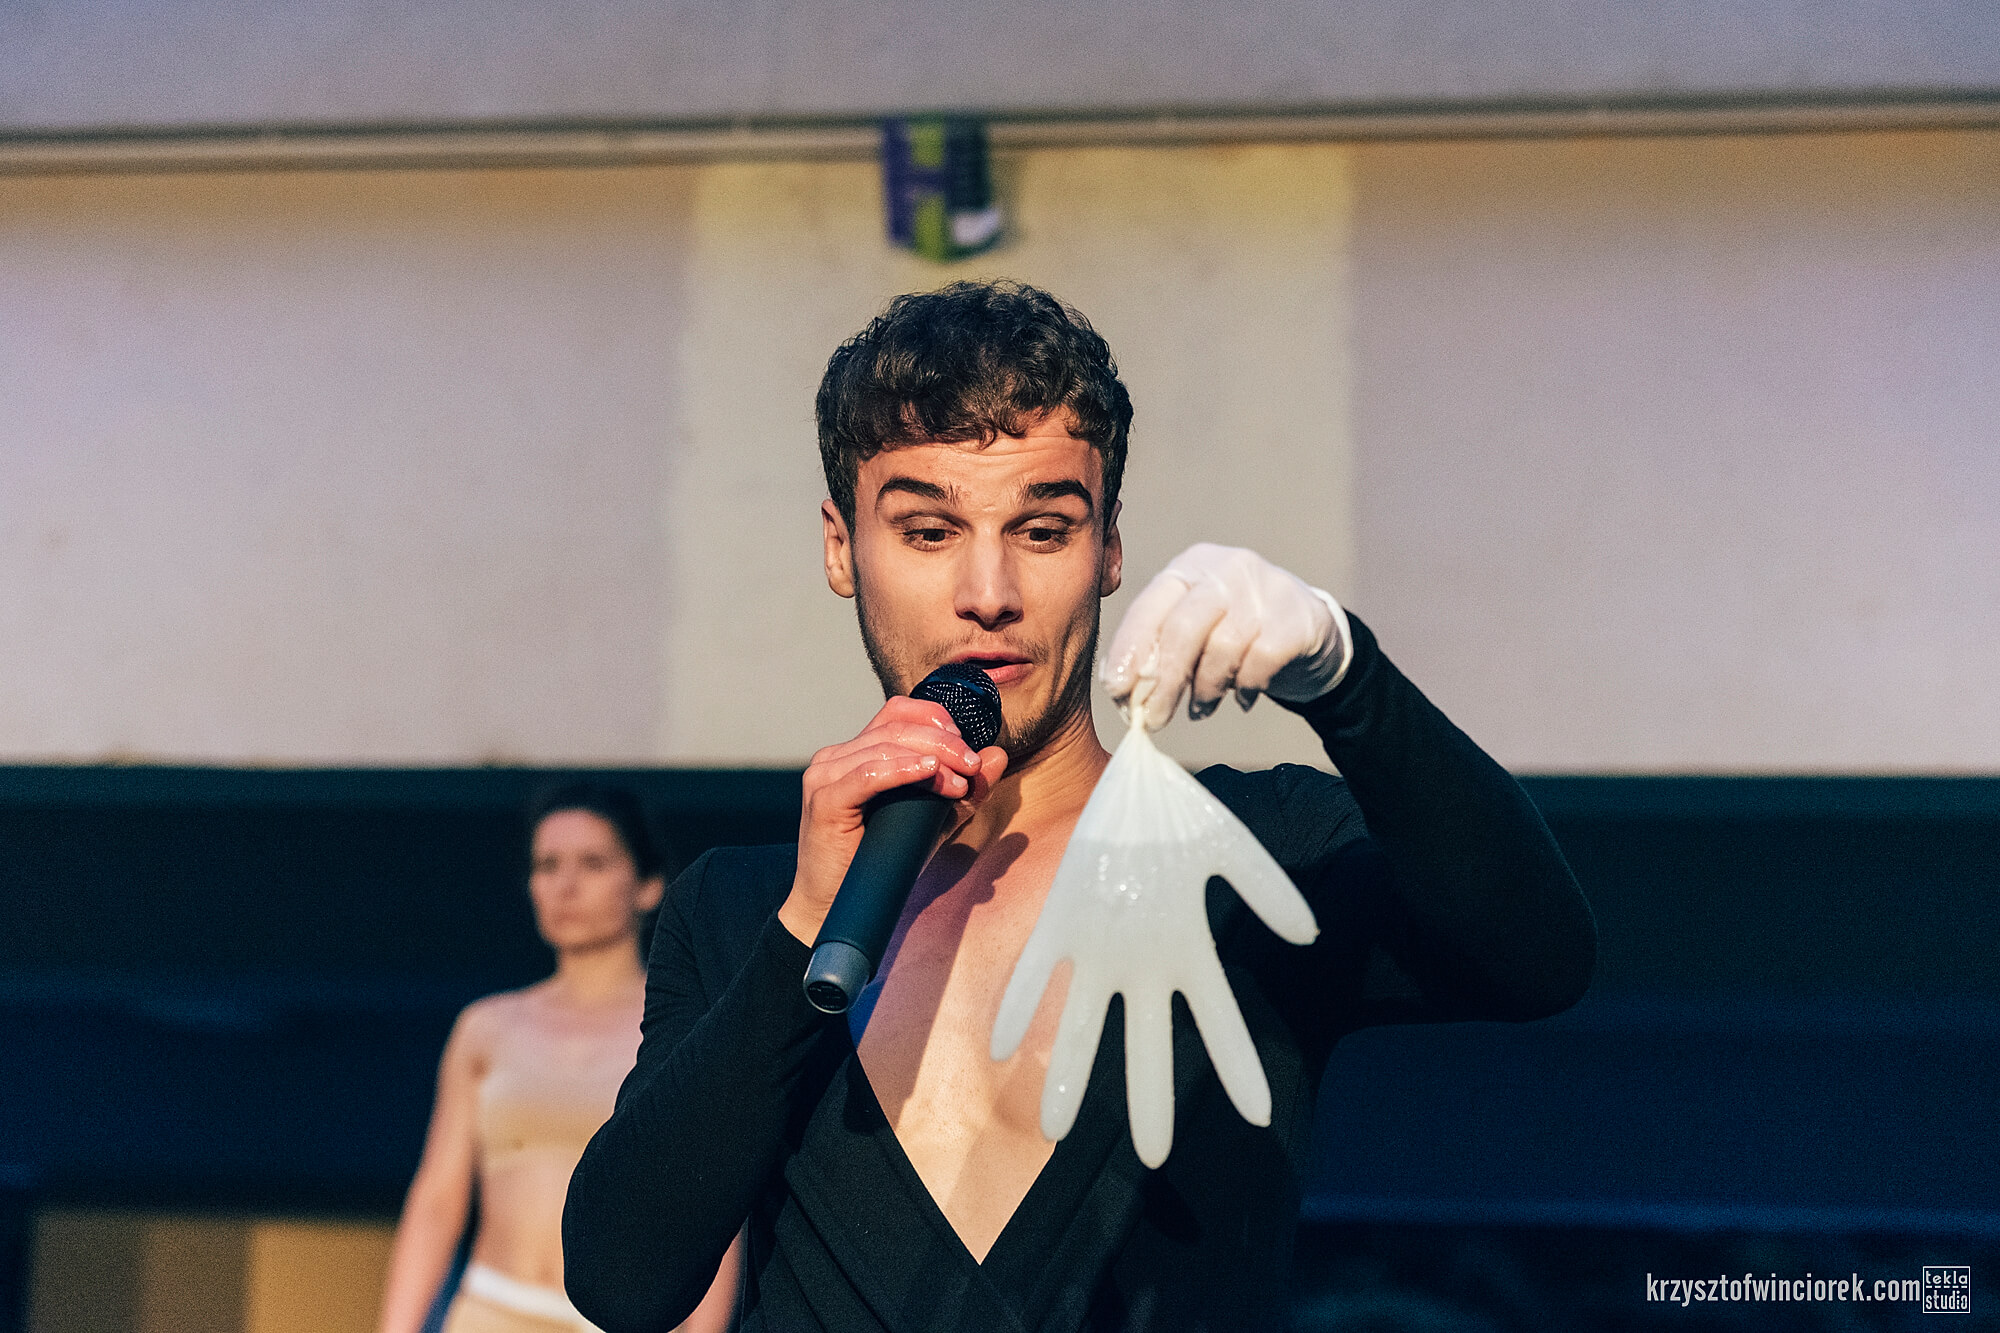 Zdjęcie z festiwalu Pociąg do miasta. Aktor w jednej ręce trzyma mikrofon, w drugiej białą lateksową rękawiczkę wypełnioną wodą.